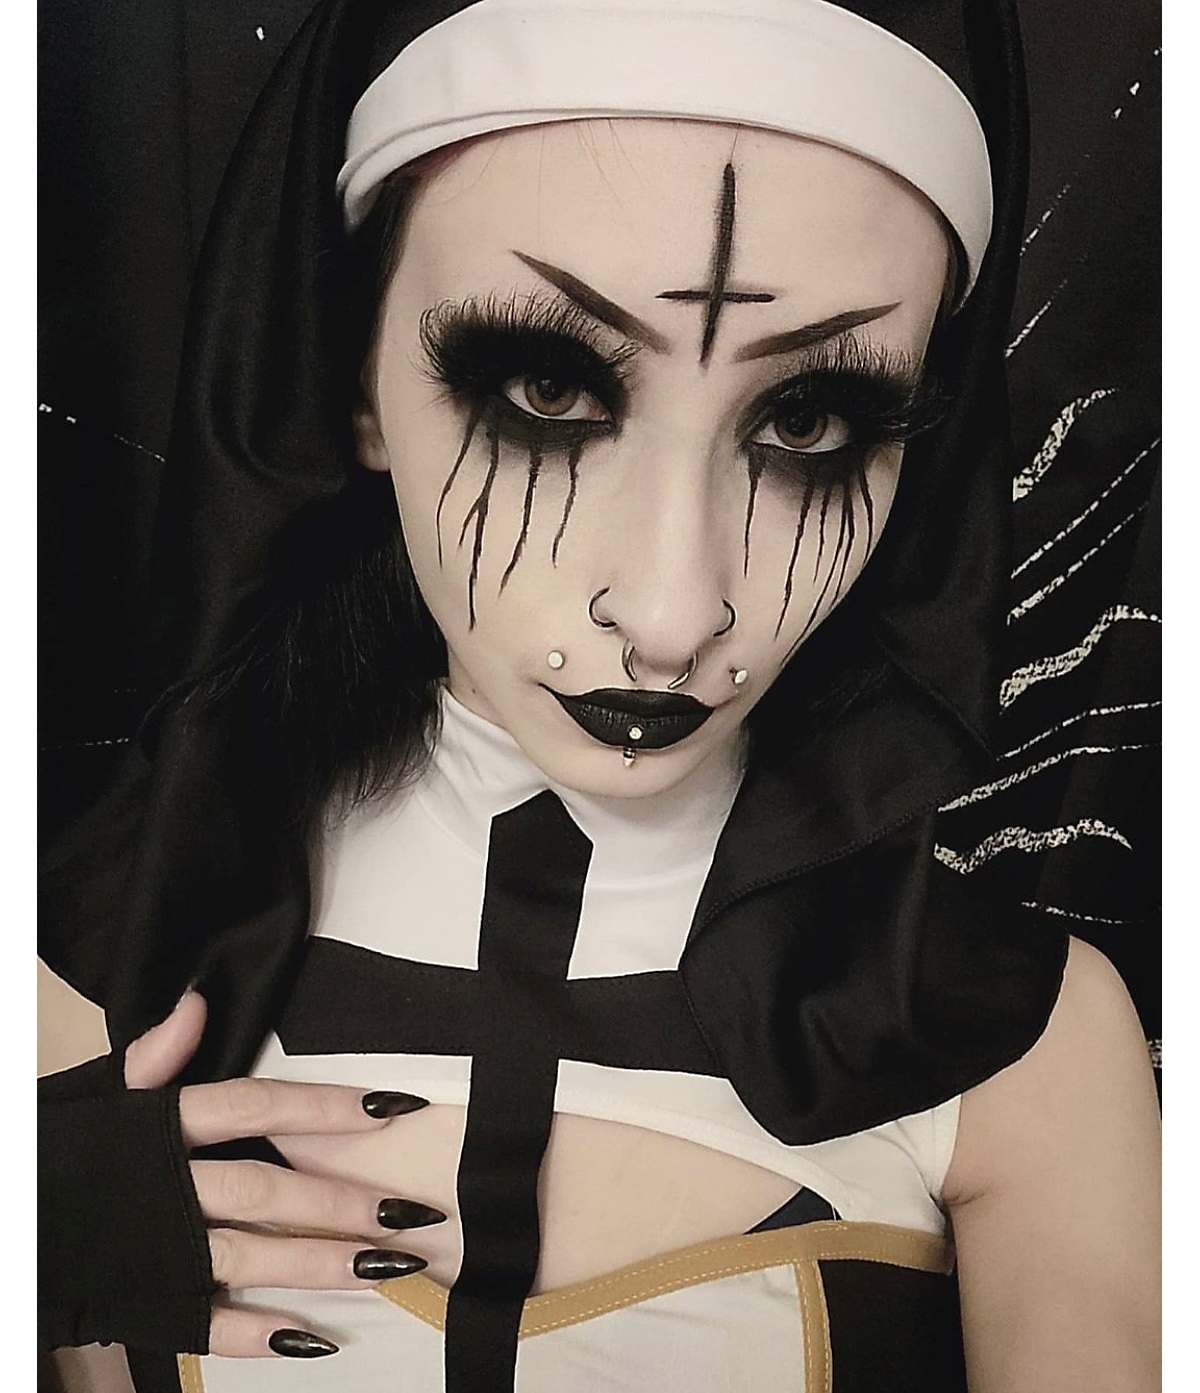 Demonic nun makeup